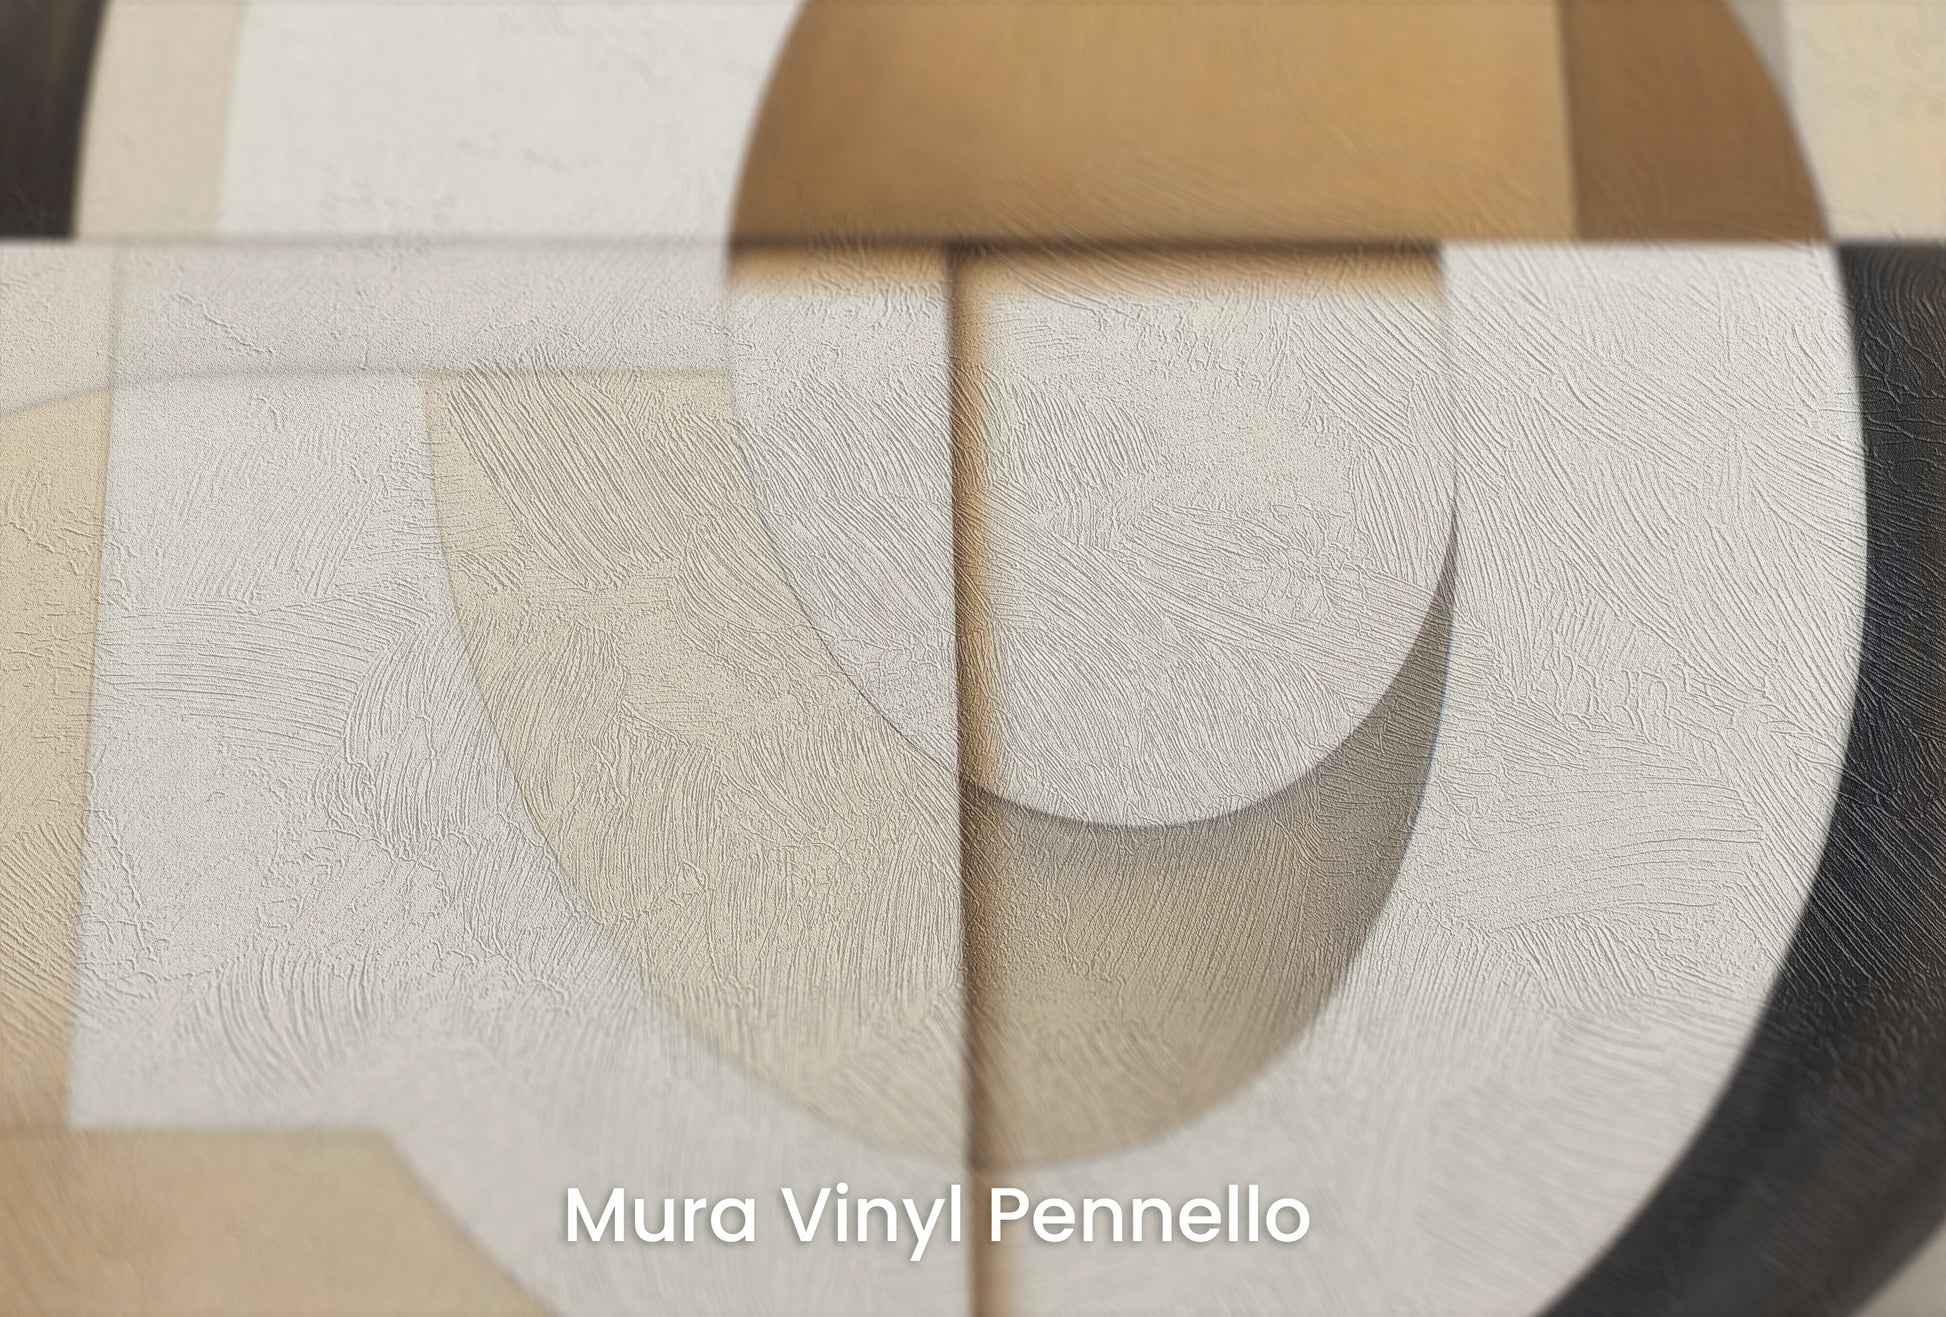 Zbliżenie na artystyczną fototapetę o nazwie MODERNIST SPHERICAL ARRAY na podłożu Mura Vinyl Pennello - faktura pociągnięć pędzla malarskiego.